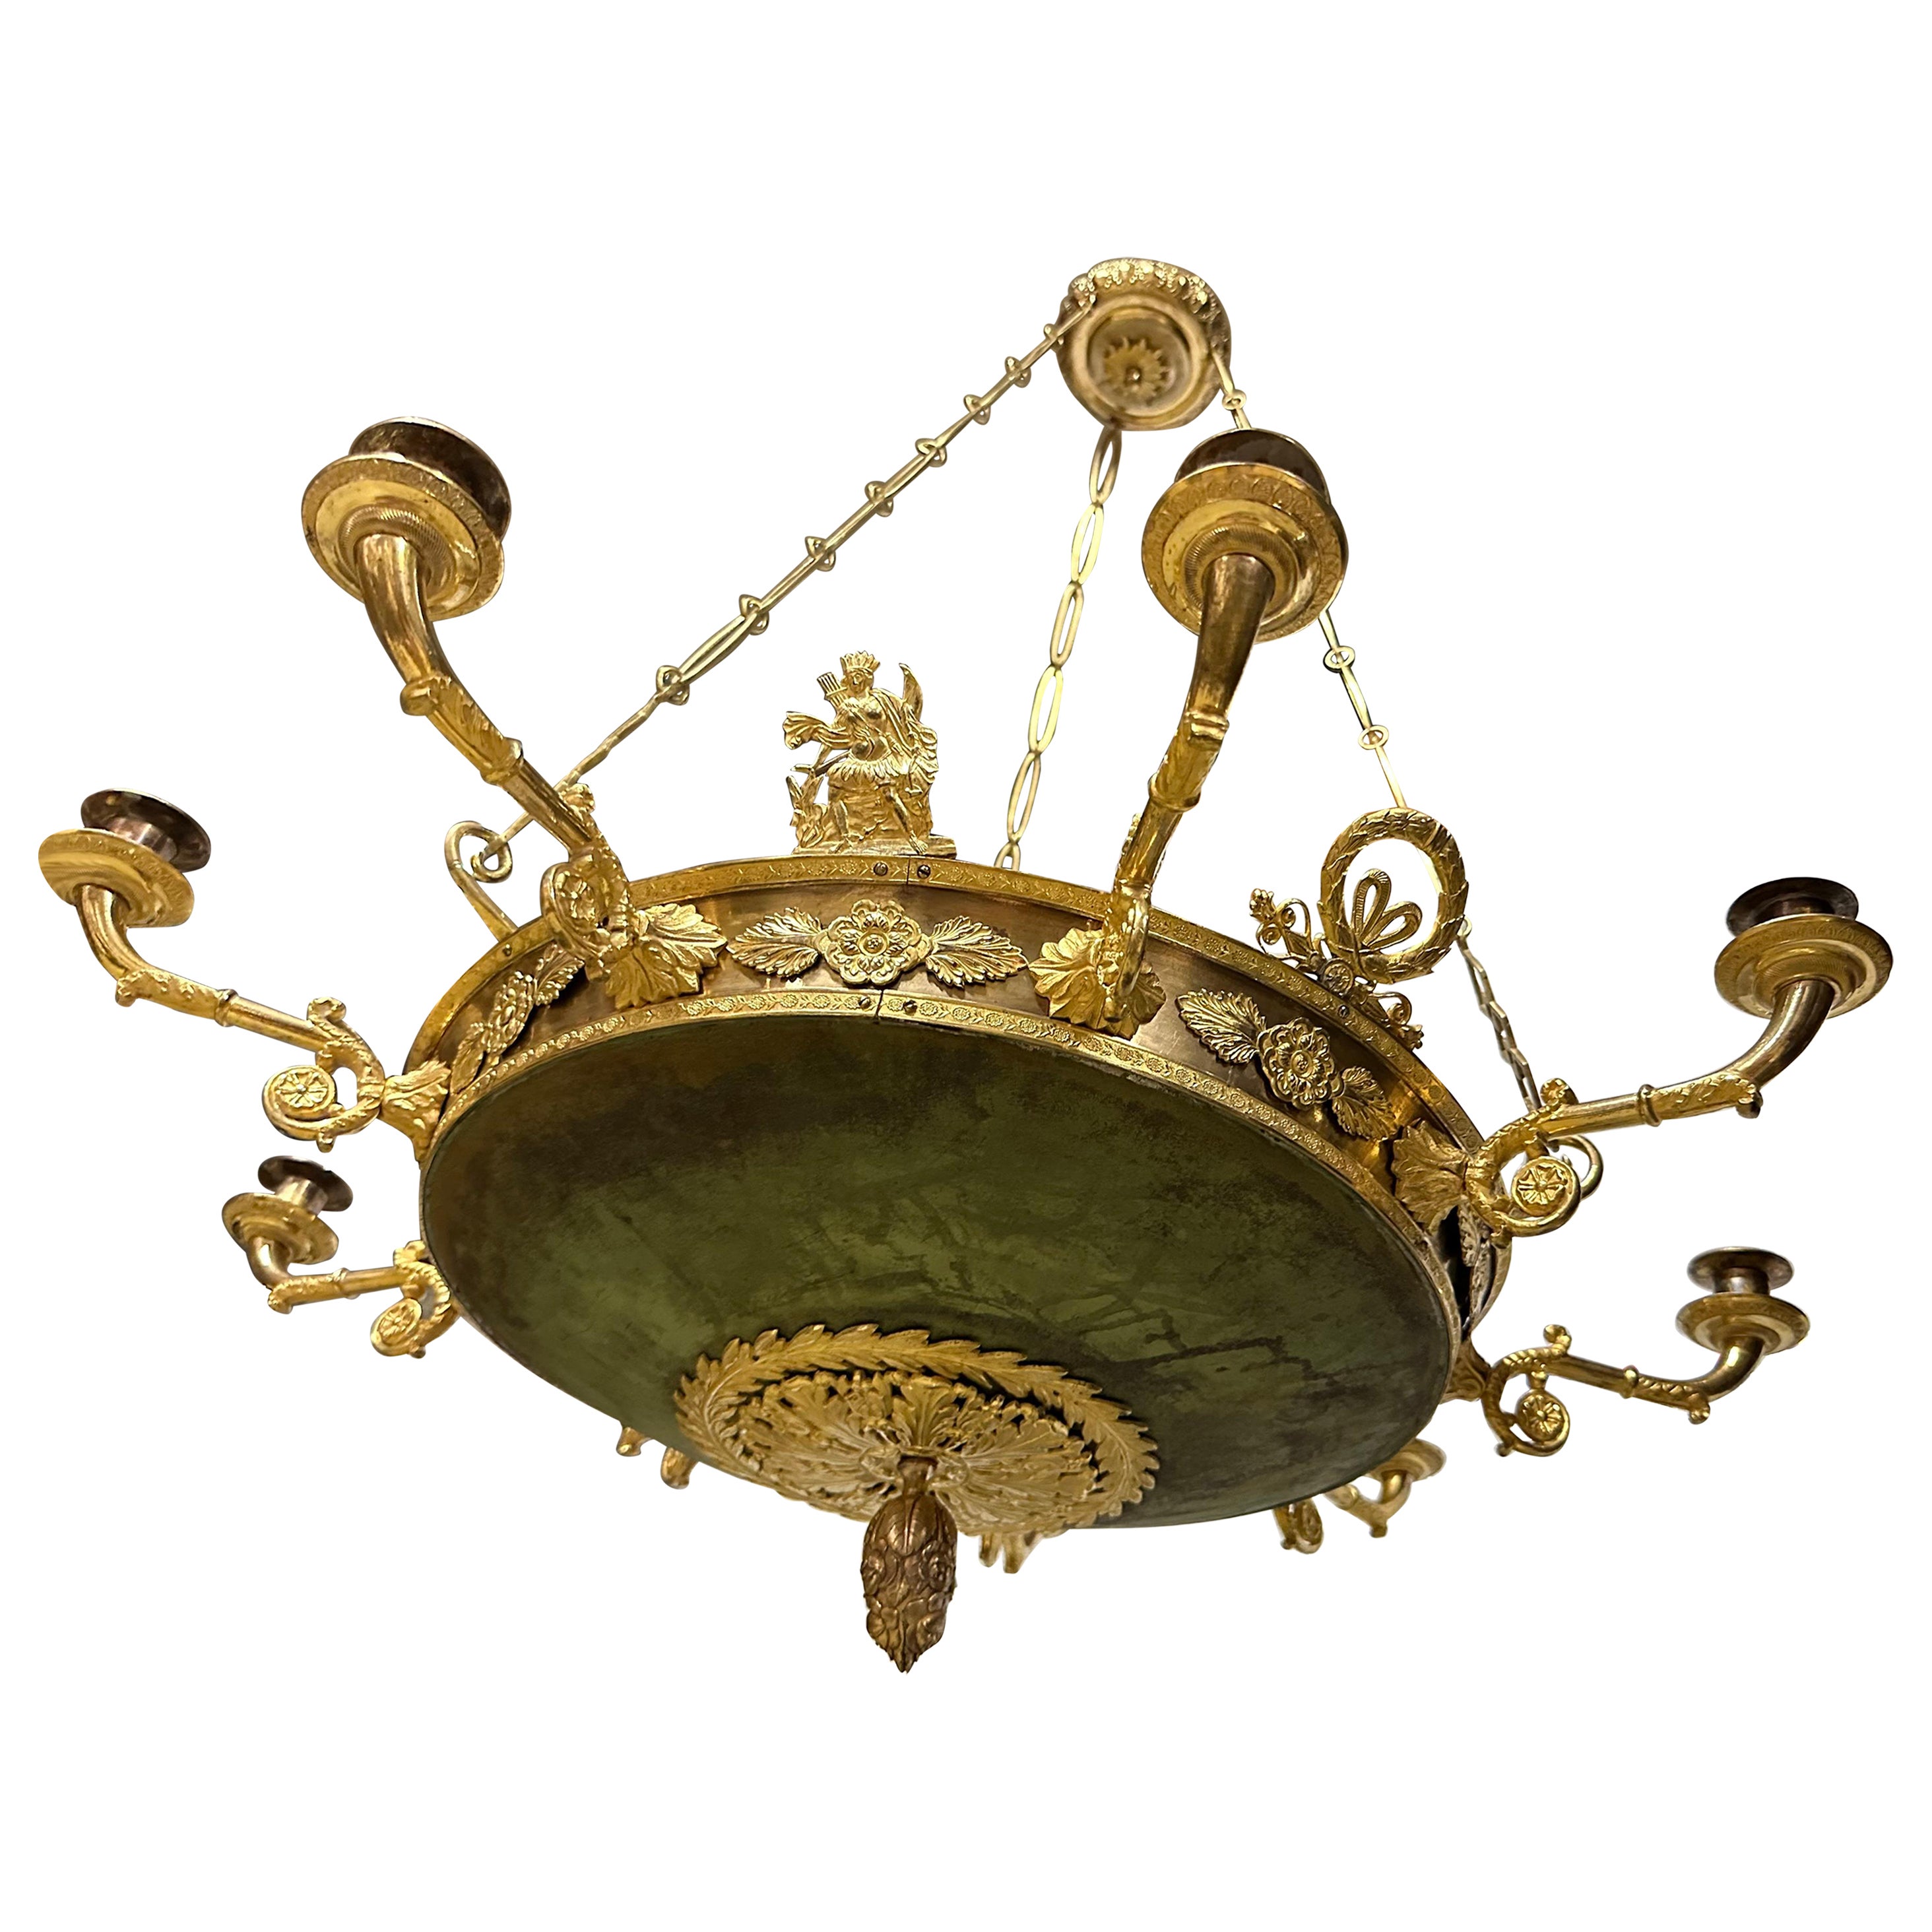 Une charmante lampe Empire fabriquée vers 1820. Le grand bol est patiné vert et la patine est intacte et a un aspect très charmant avec ses irrégularités de couleur. Les bras et les autres éléments décoratifs sont en bronze et en laiton doré. Trois